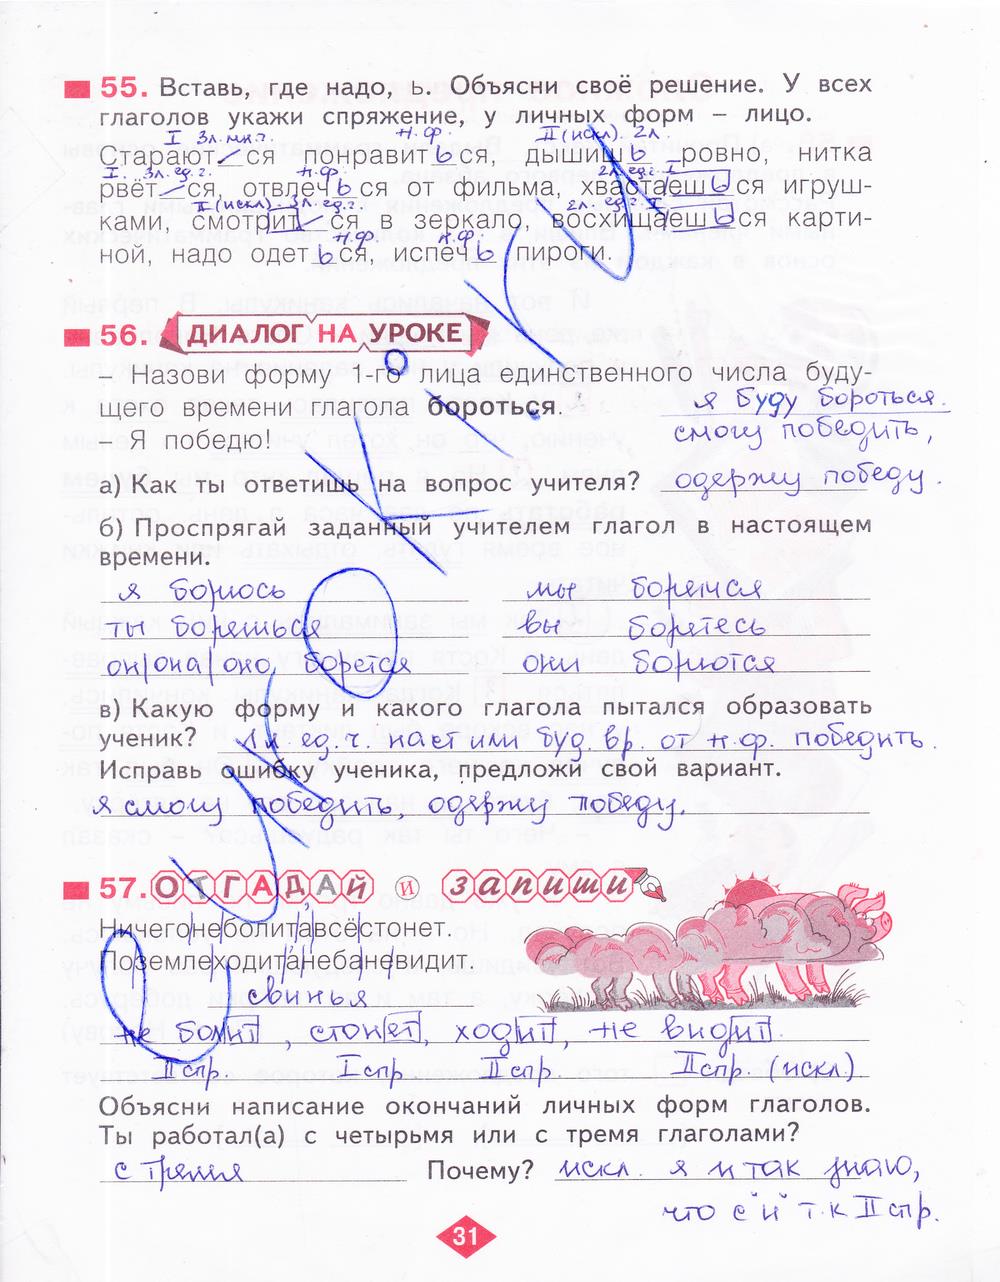 гдз 4 класс рабочая тетрадь часть 3 страница 31 русский язык Нечаева, Воскресенская